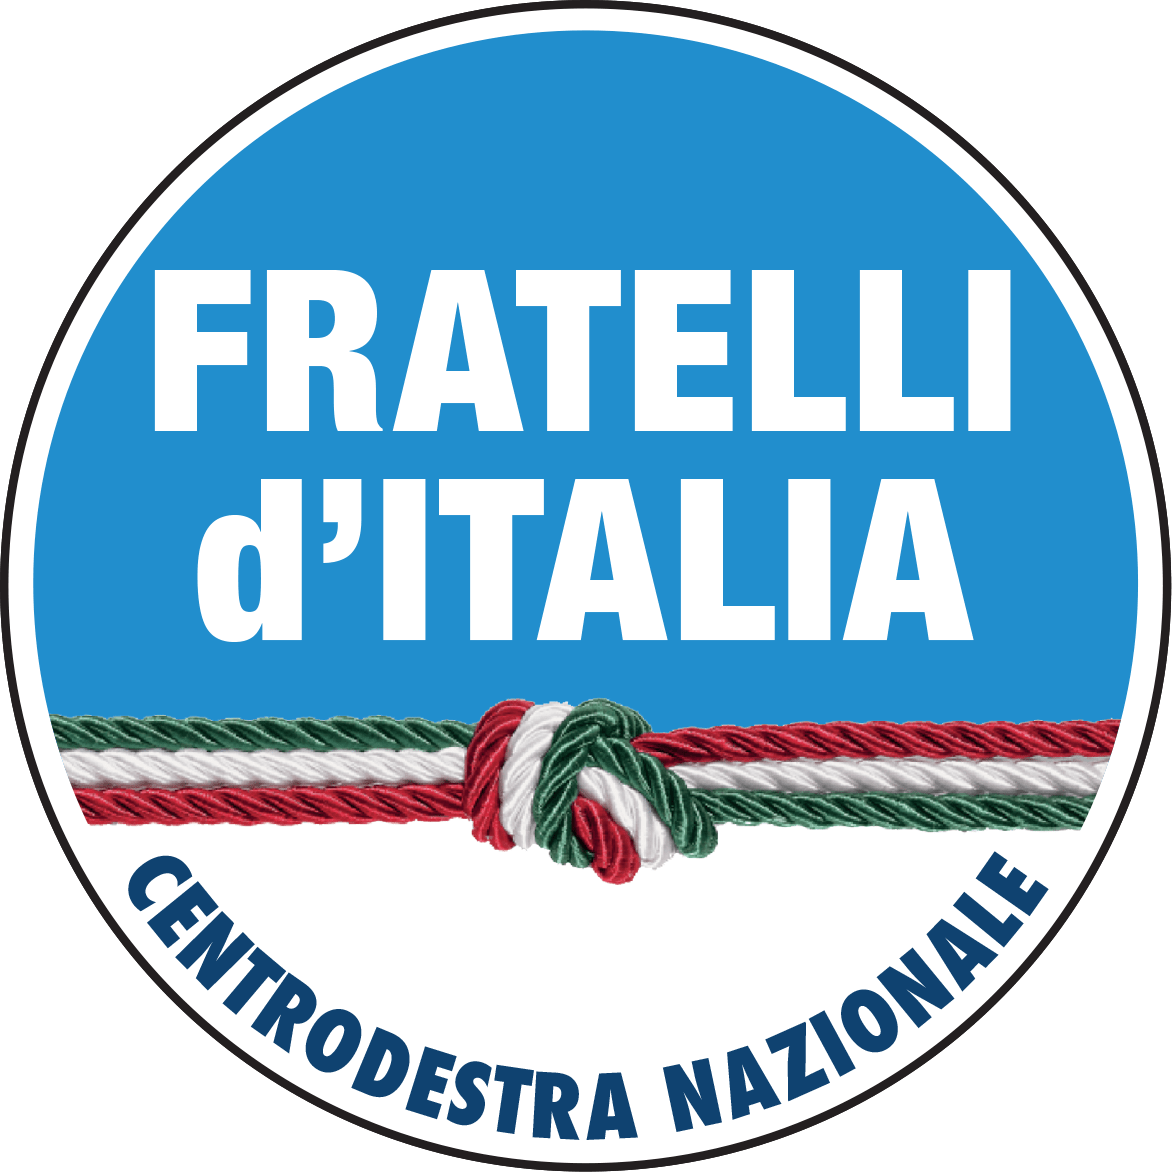 FRATELLI D’ITALIA